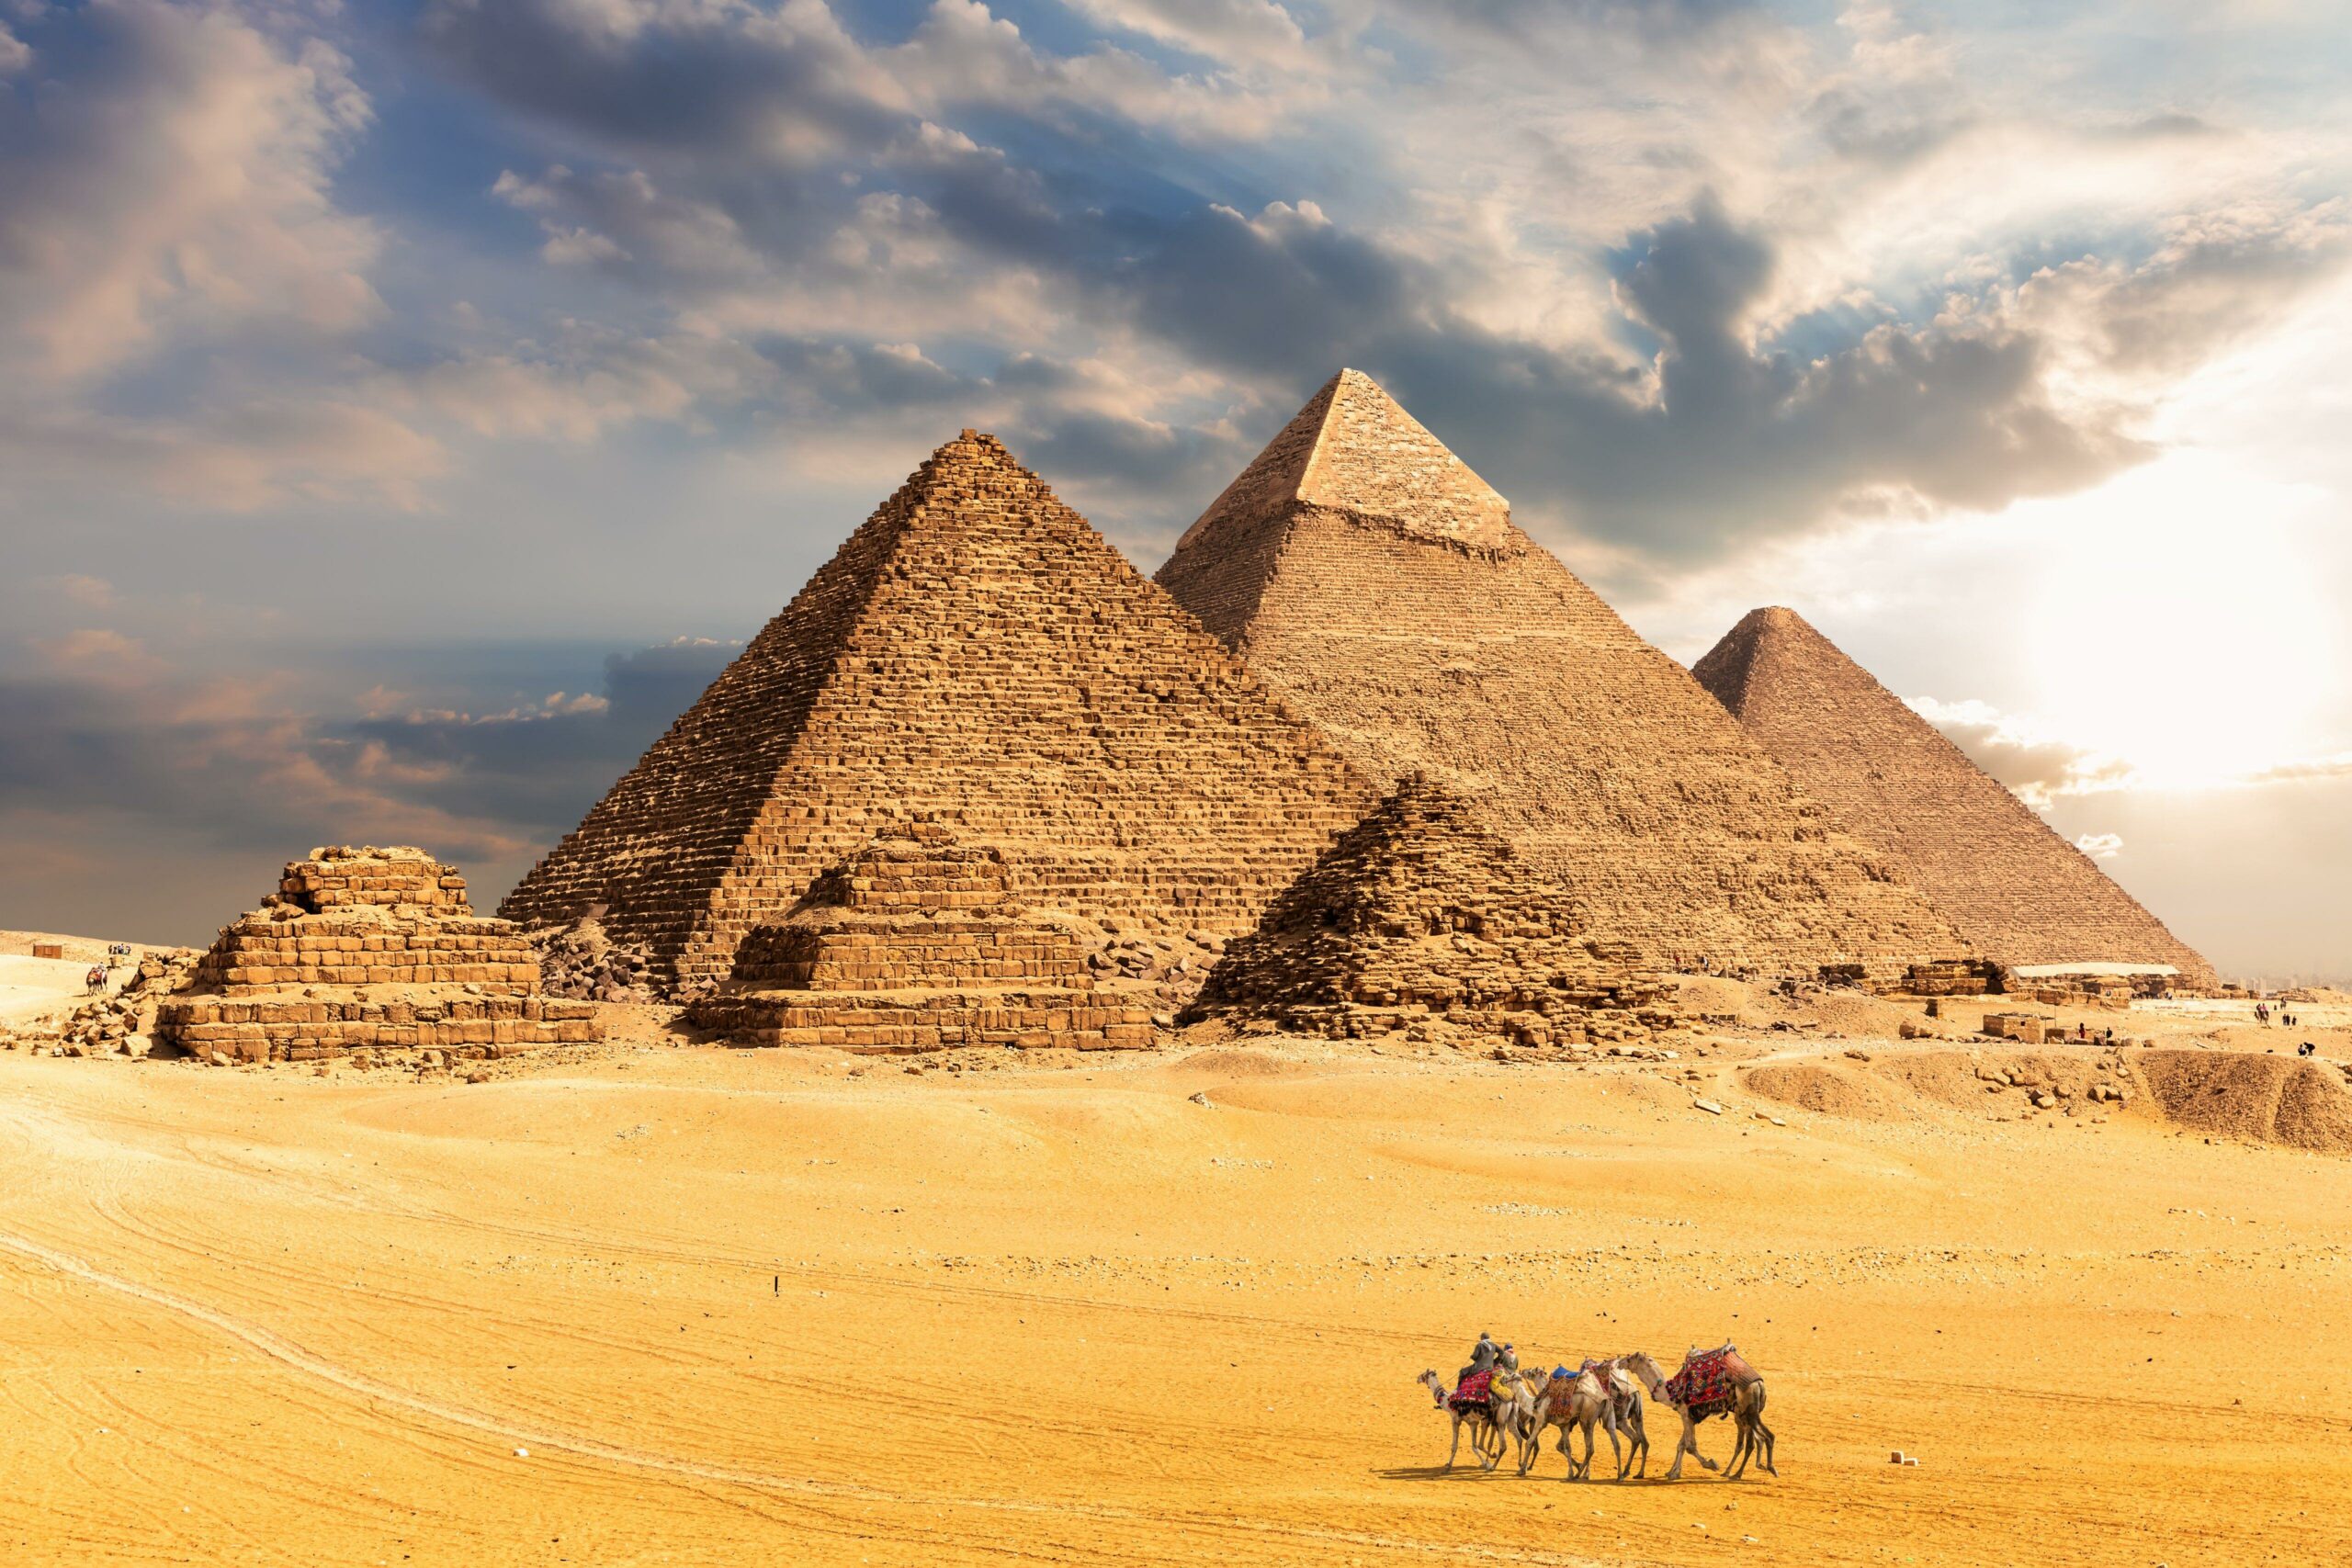 스파이웨어 공급업체가 희귀한 iOS 익스플로잇 체인으로 이집트 조직을 표적으로 삼았습니다.